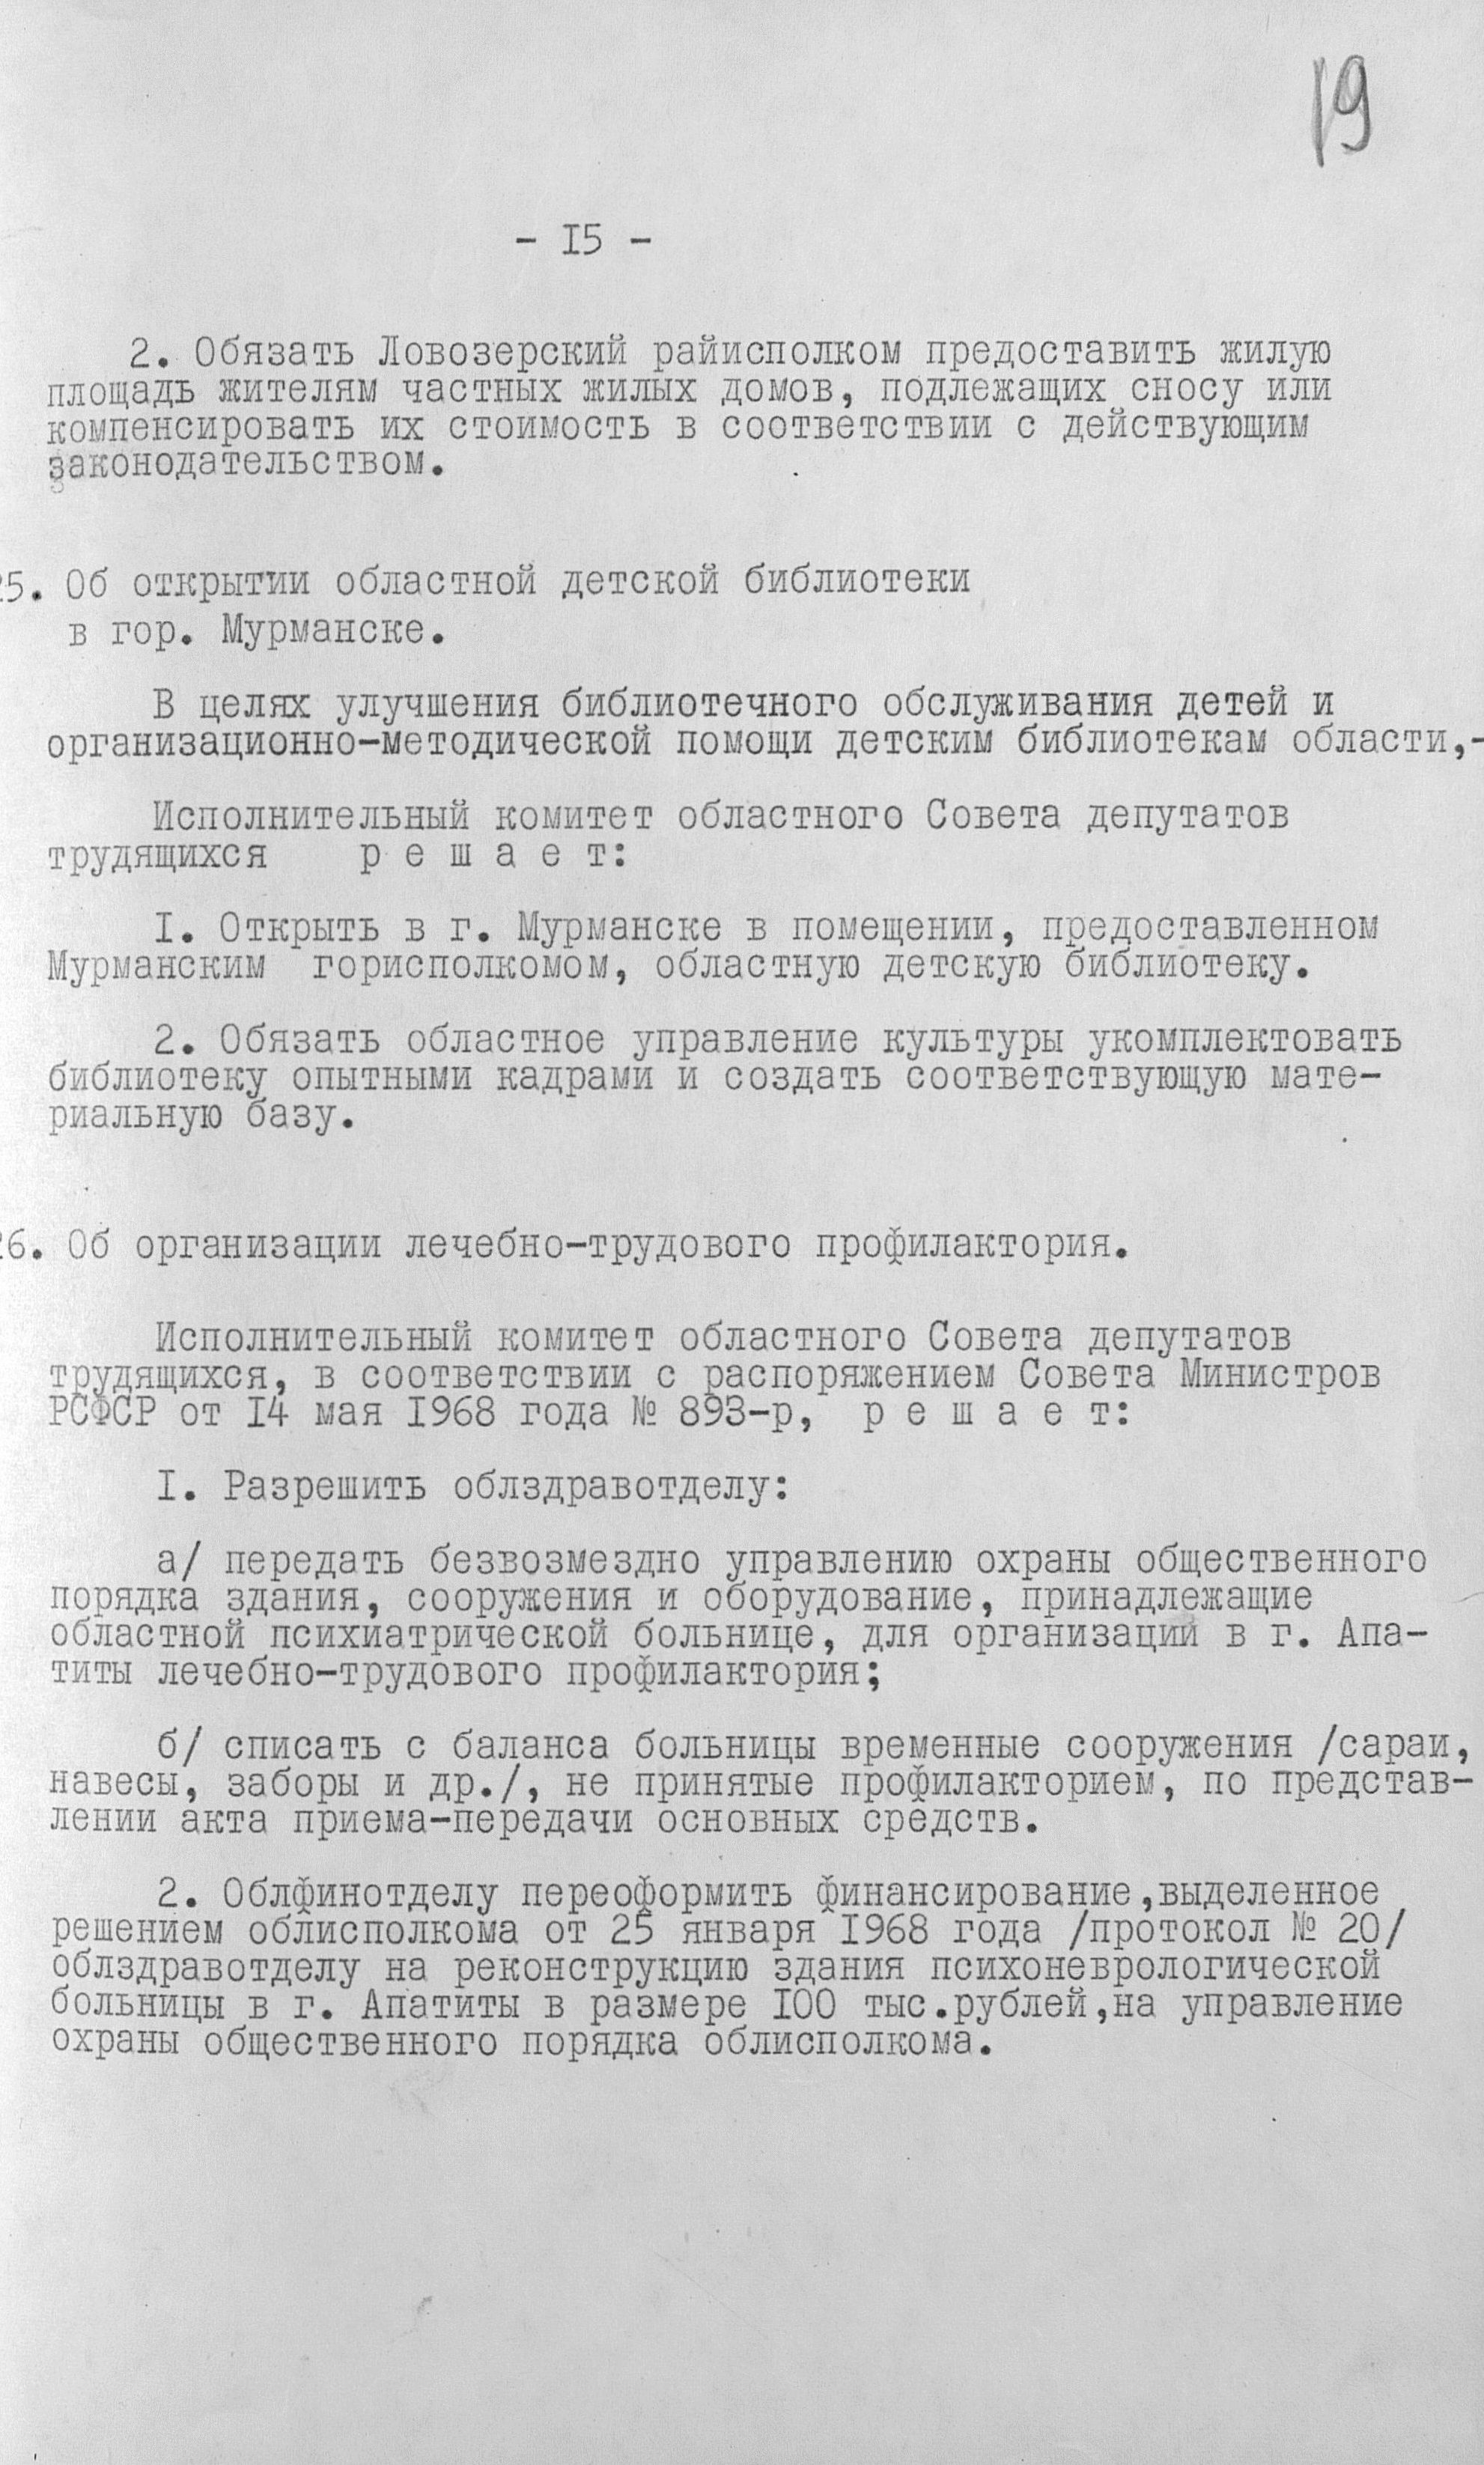 Решения Мурманского облисполкома от 8 июля 1968 г. об организации библиотеки. Р-405 оп. 8 д. 359 л. 19